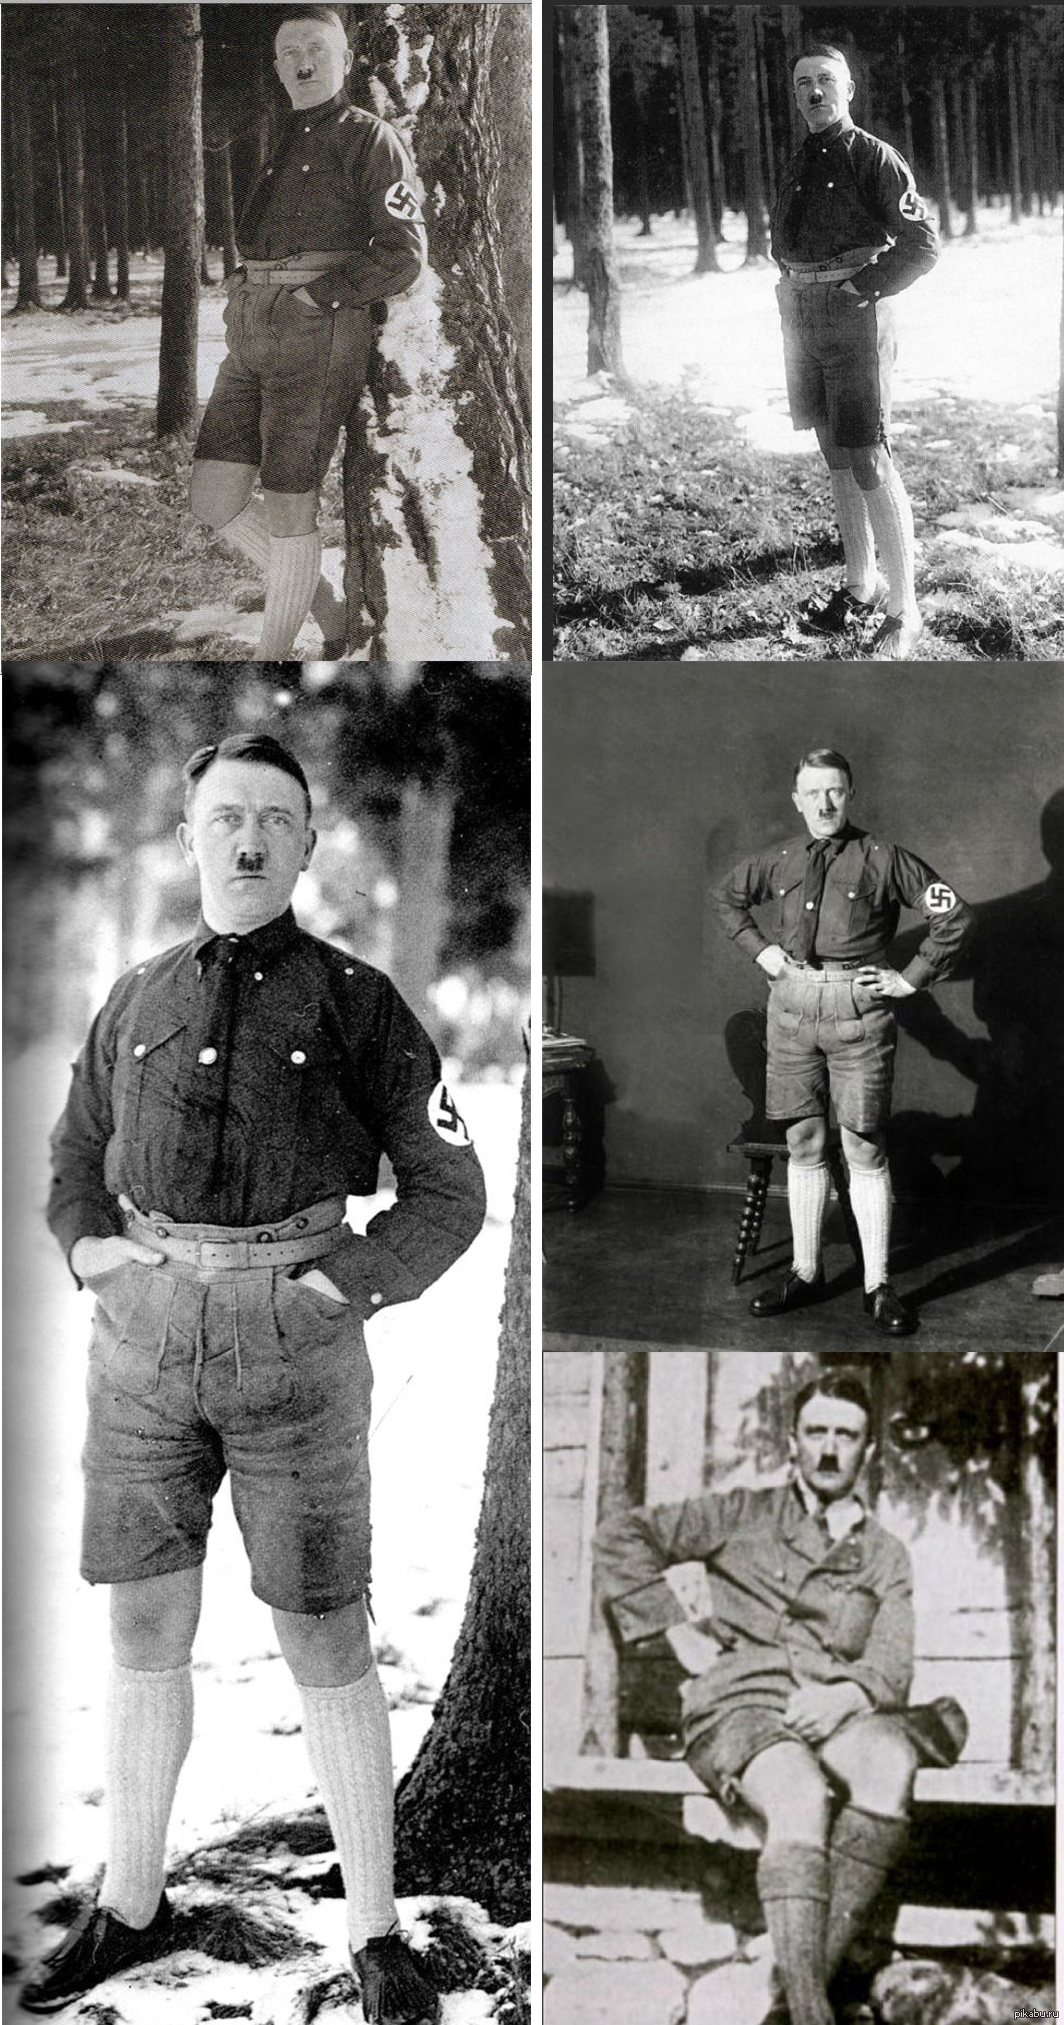 Гитлер в шортах с подтяжками